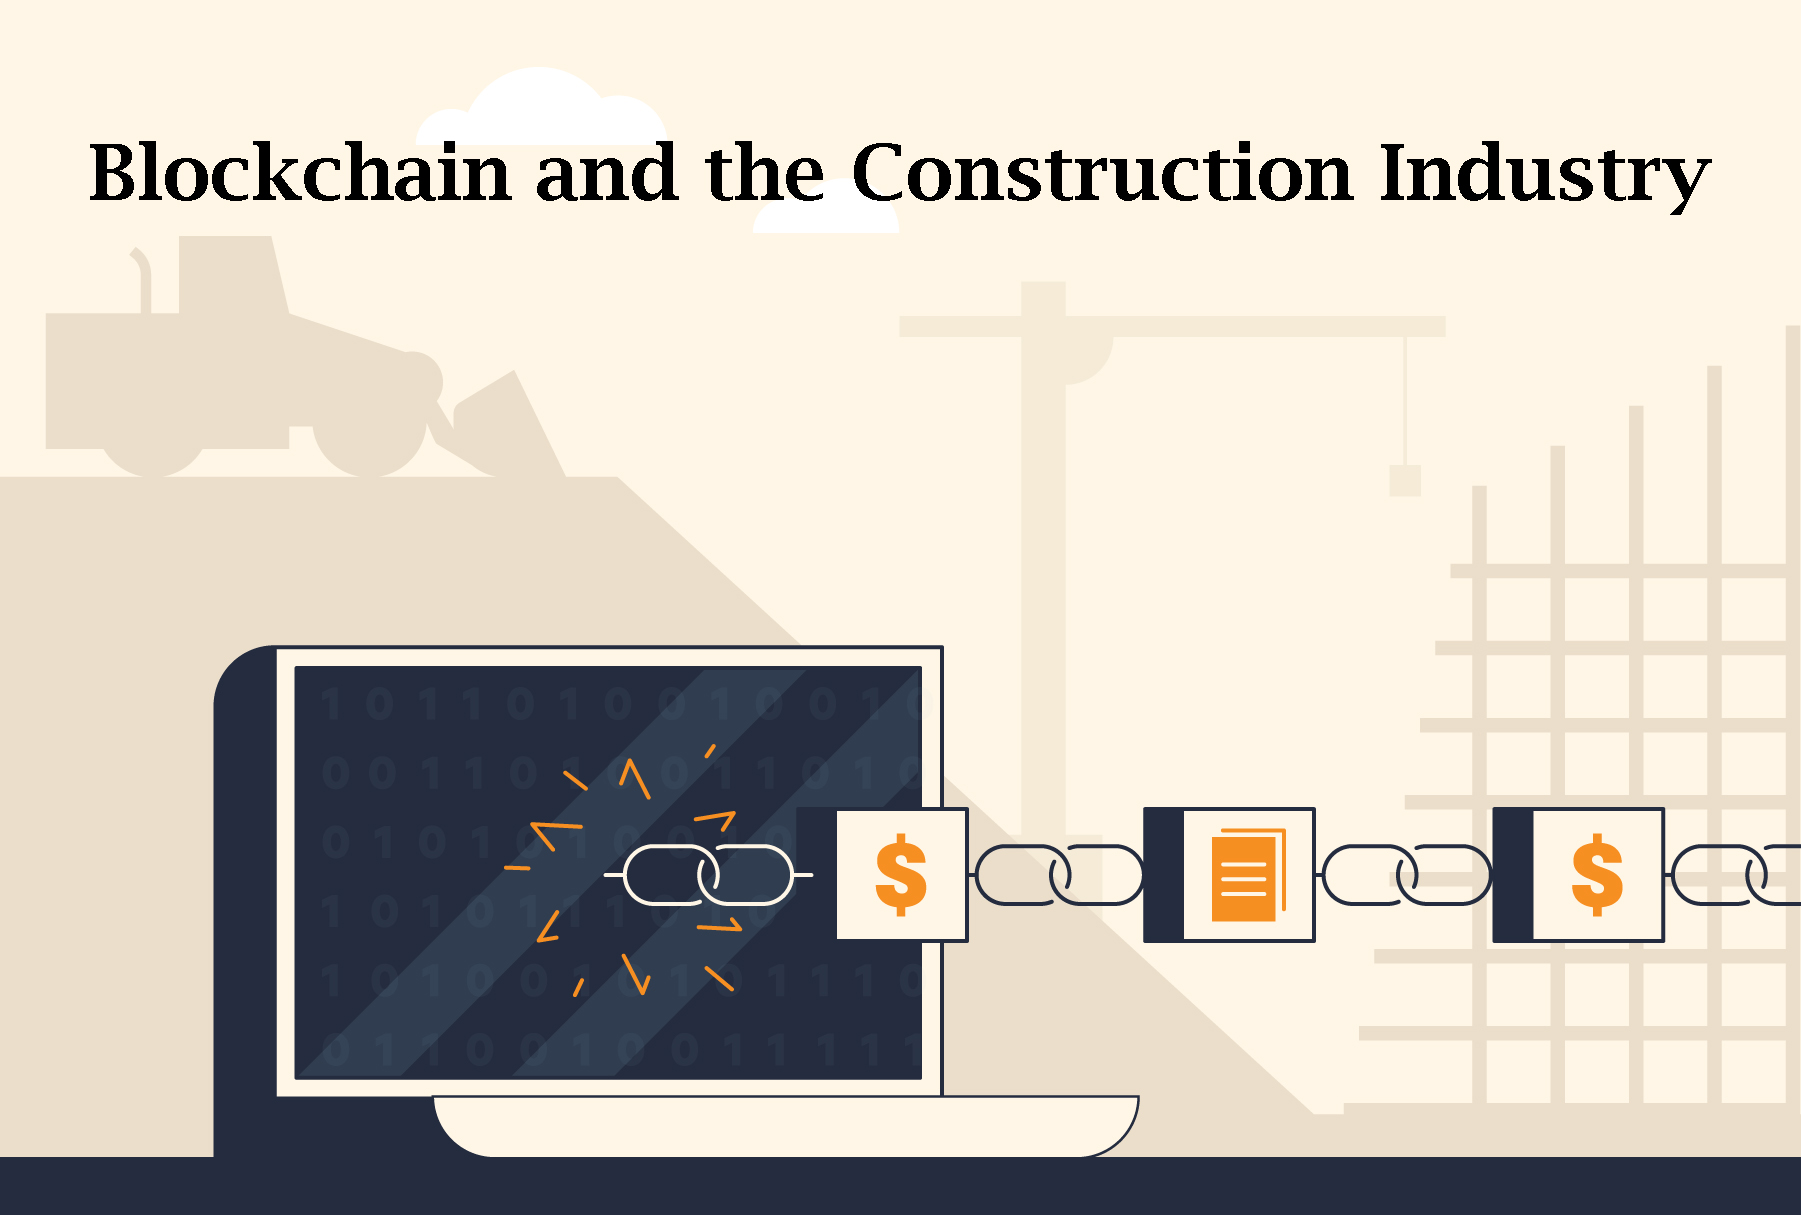 استفاده از بلاک چین (Blockchain) برای مدیریت مالی پروژه های صنعت ساخت